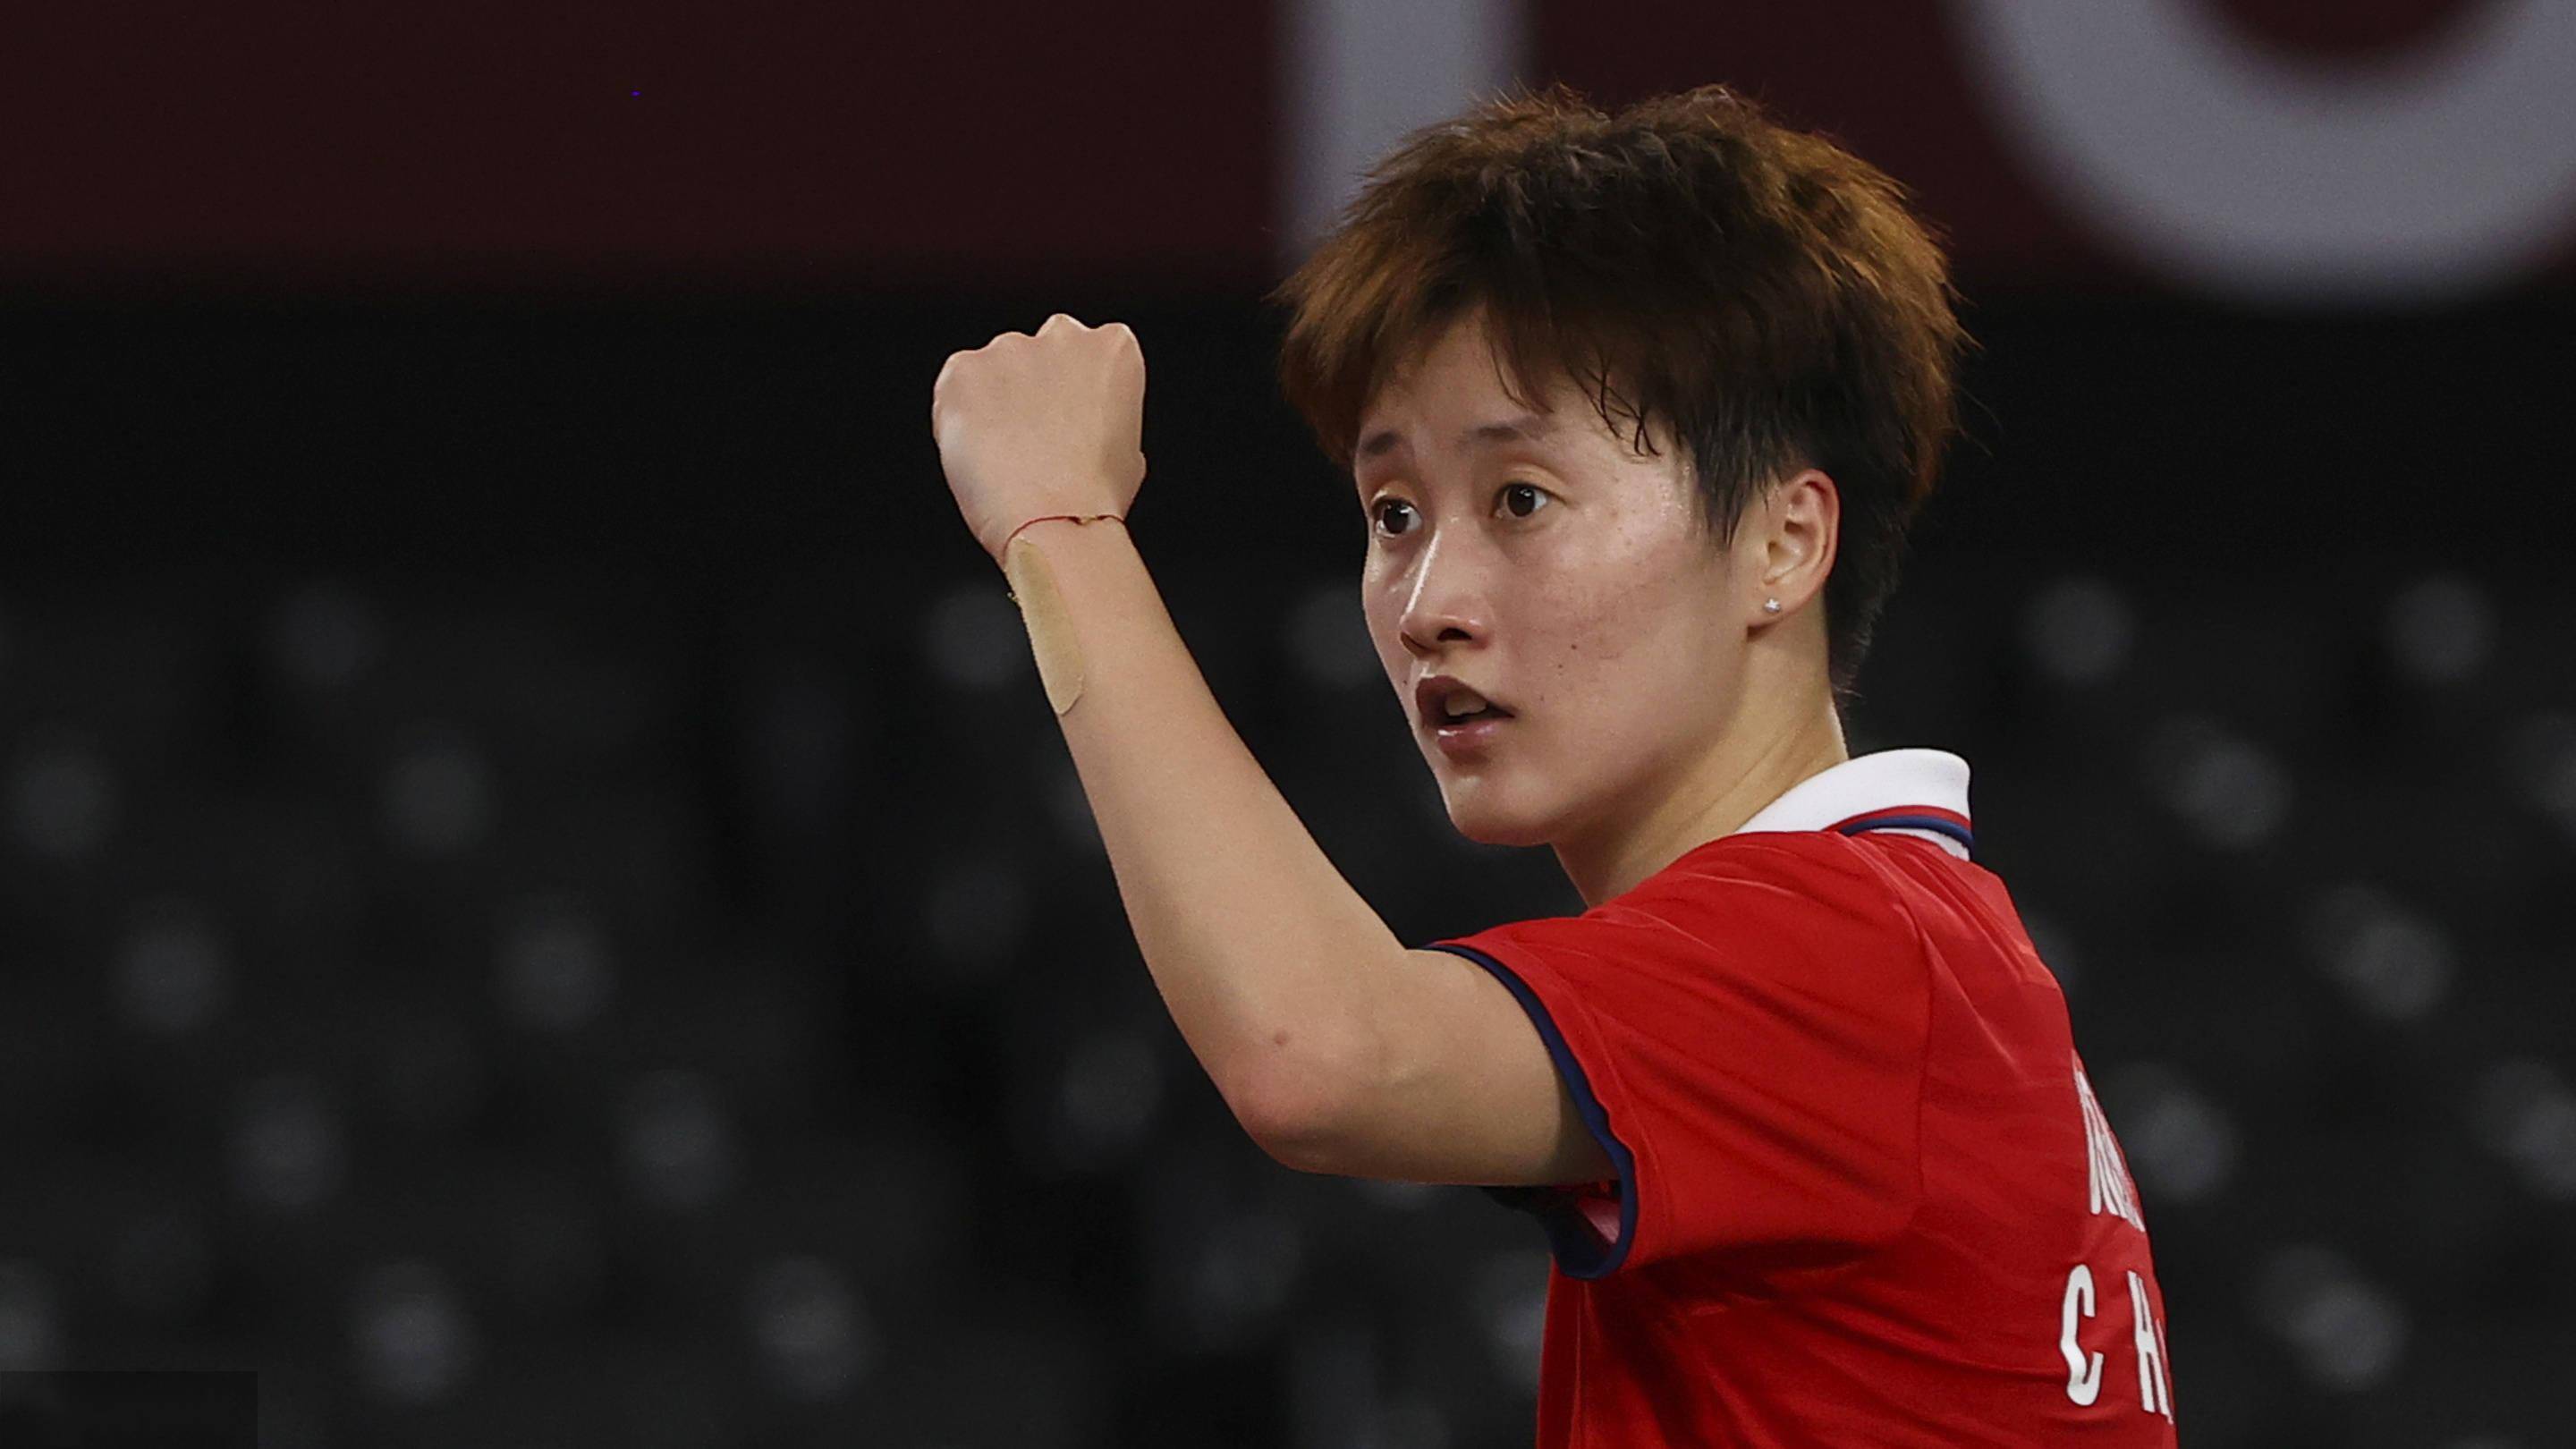 中国女子羽毛球选手陈雨菲,力压我国台湾选手,夺奥运